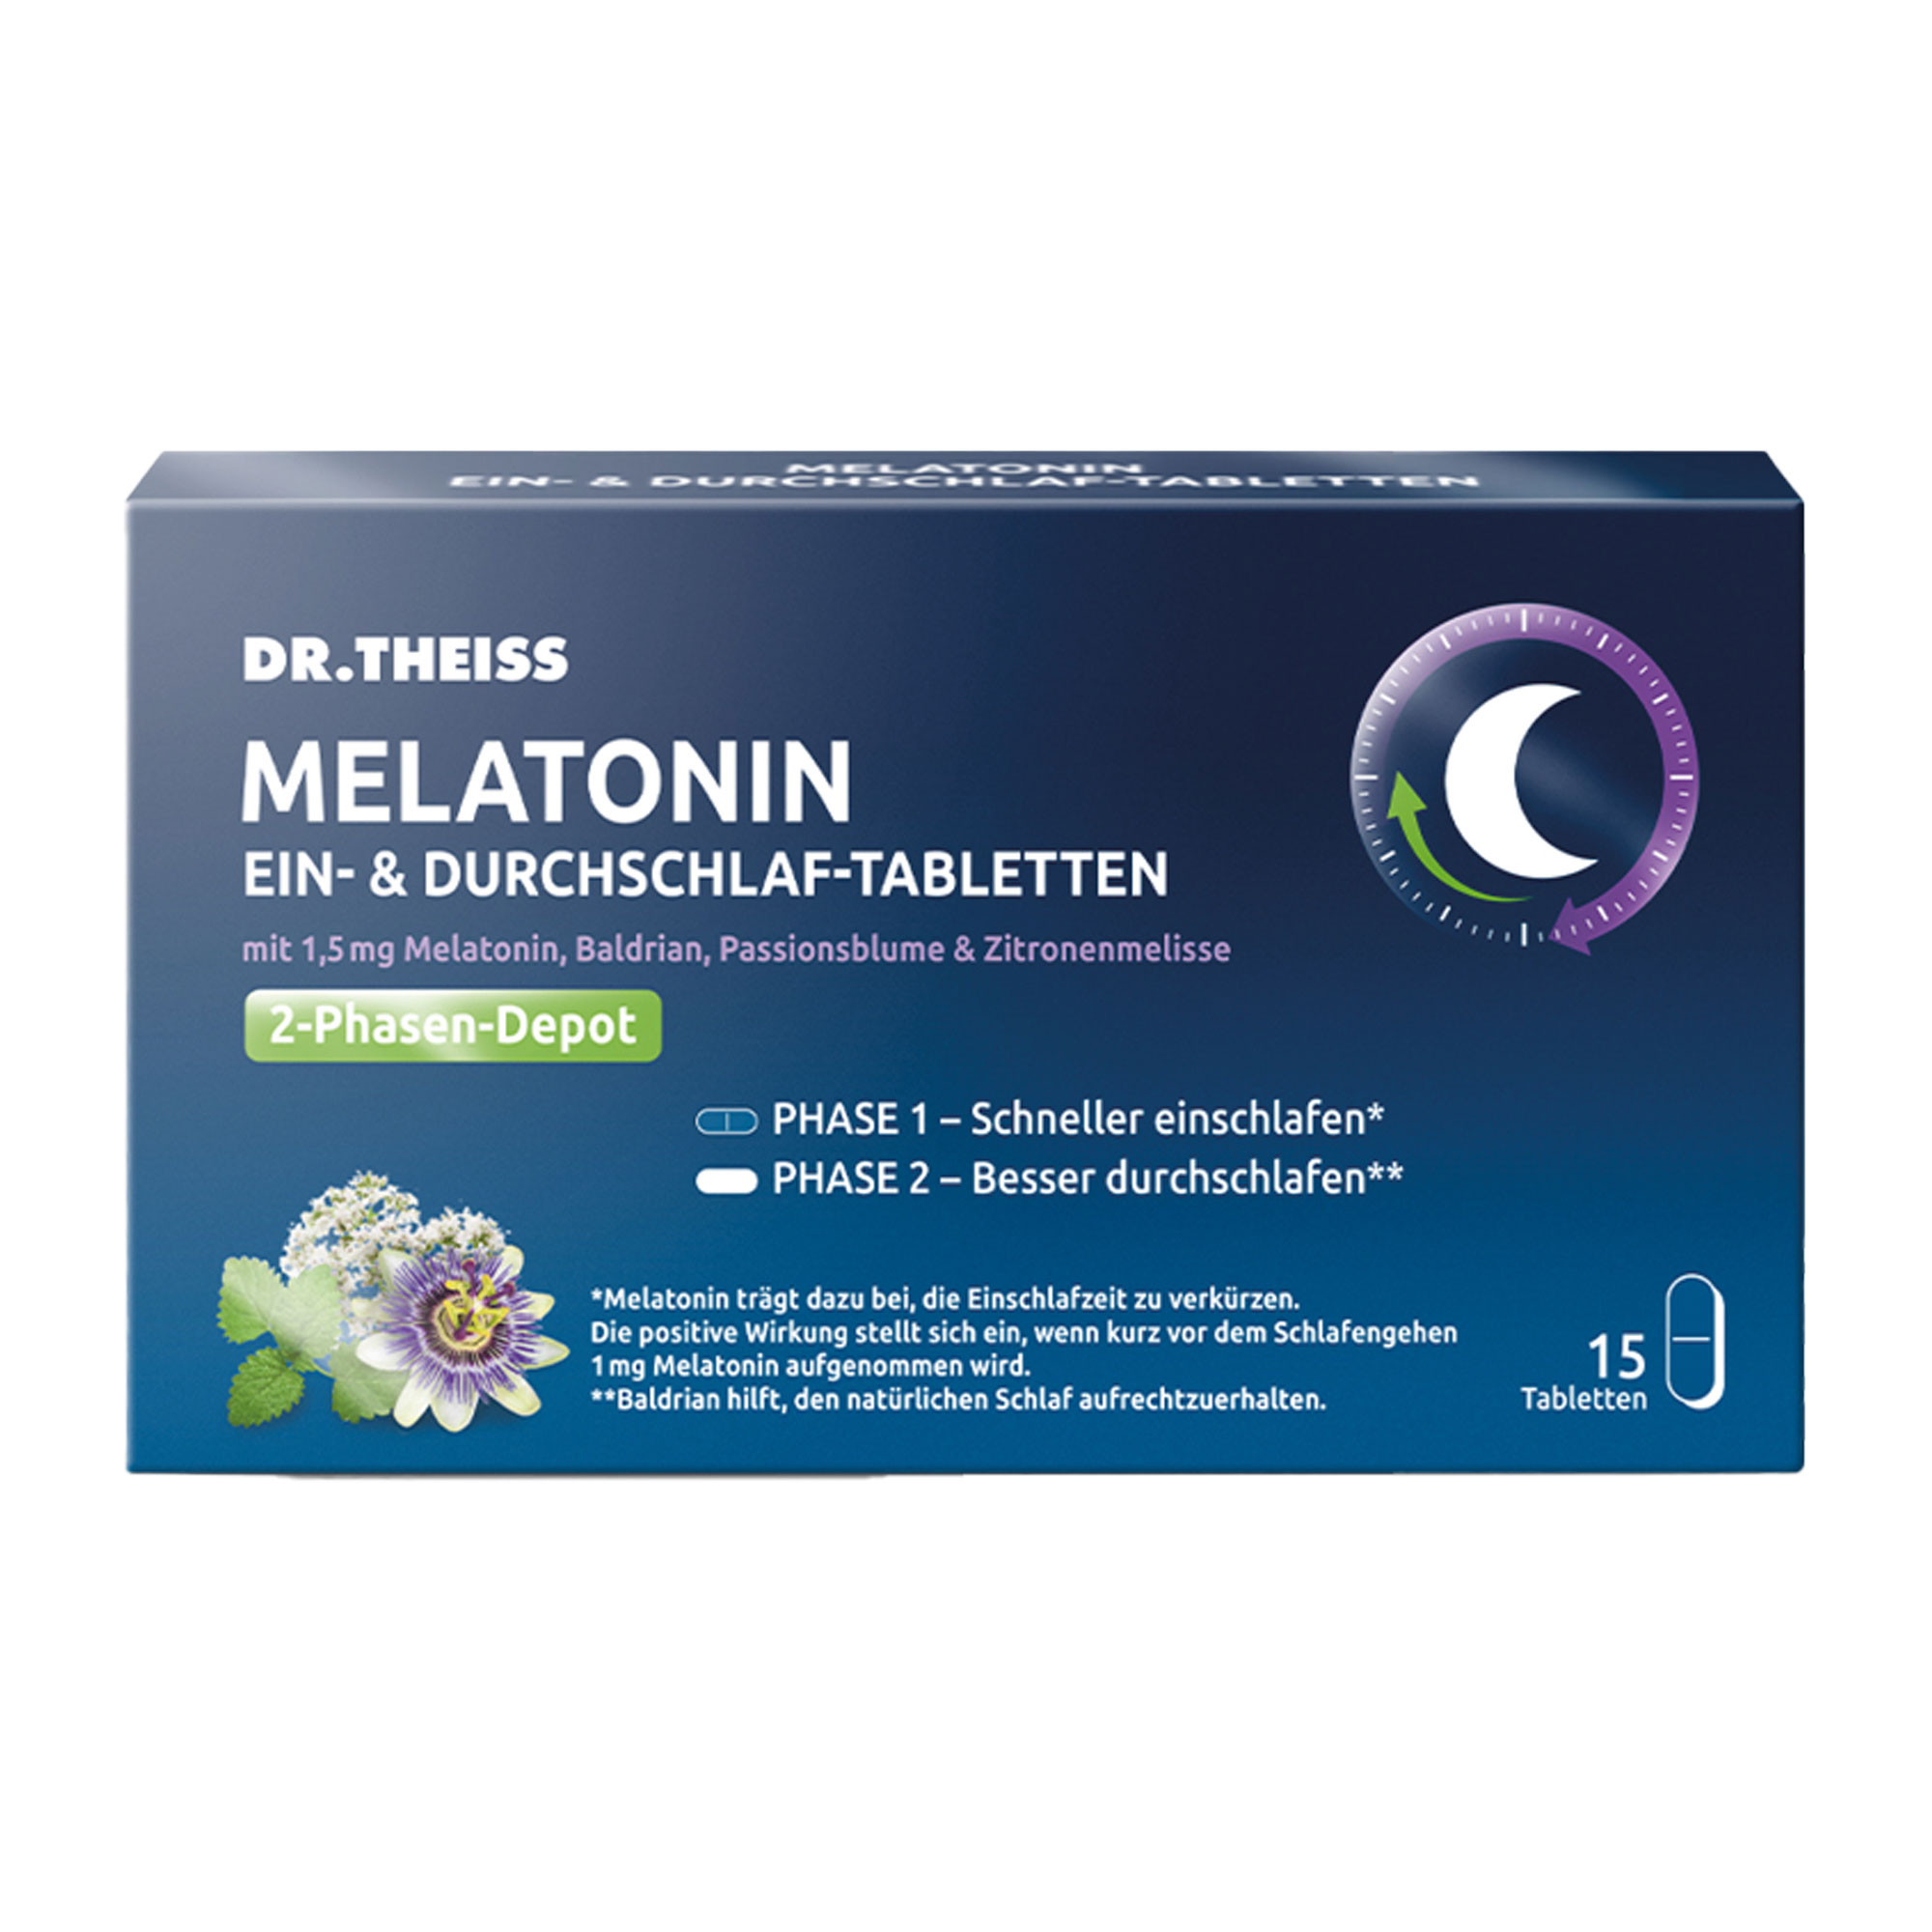 Nahrungsergänzungsmittel mit Melatonin, Baldrian, Passionsblume & Zitronenmelisse. Als 2-Phasen-Depot-Tabletten. Für Erwachsene.